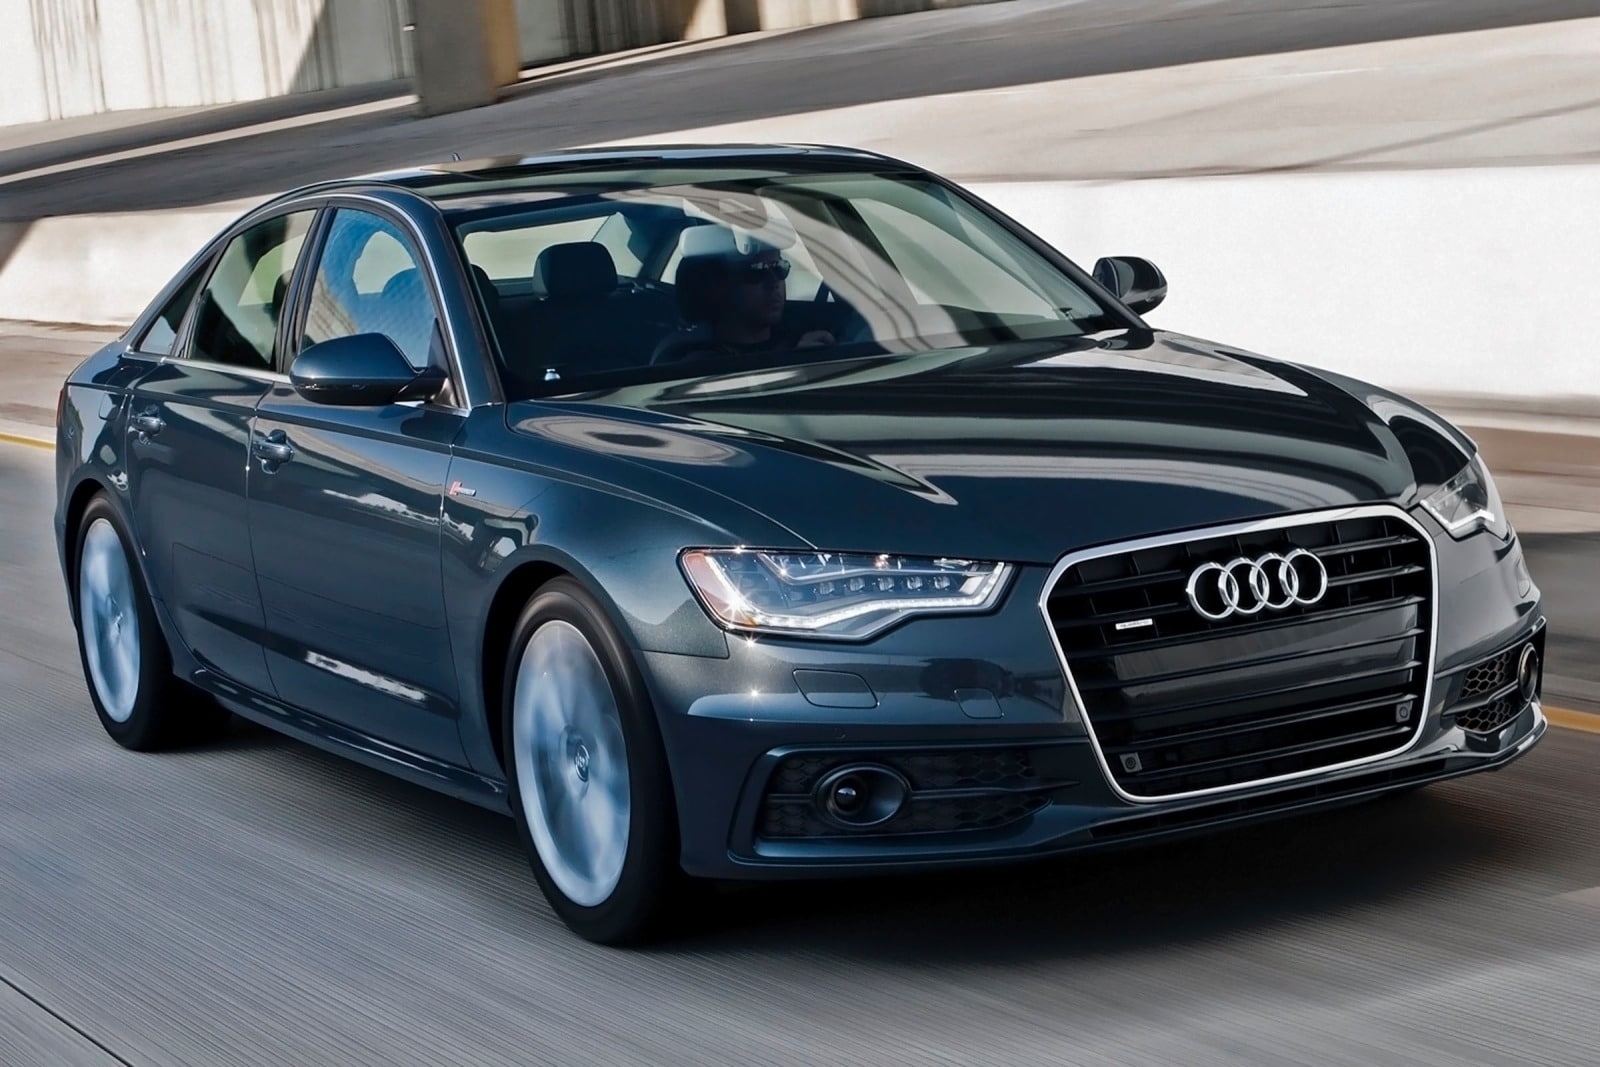 2015 Audi A6 Review & Ratings | Edmunds